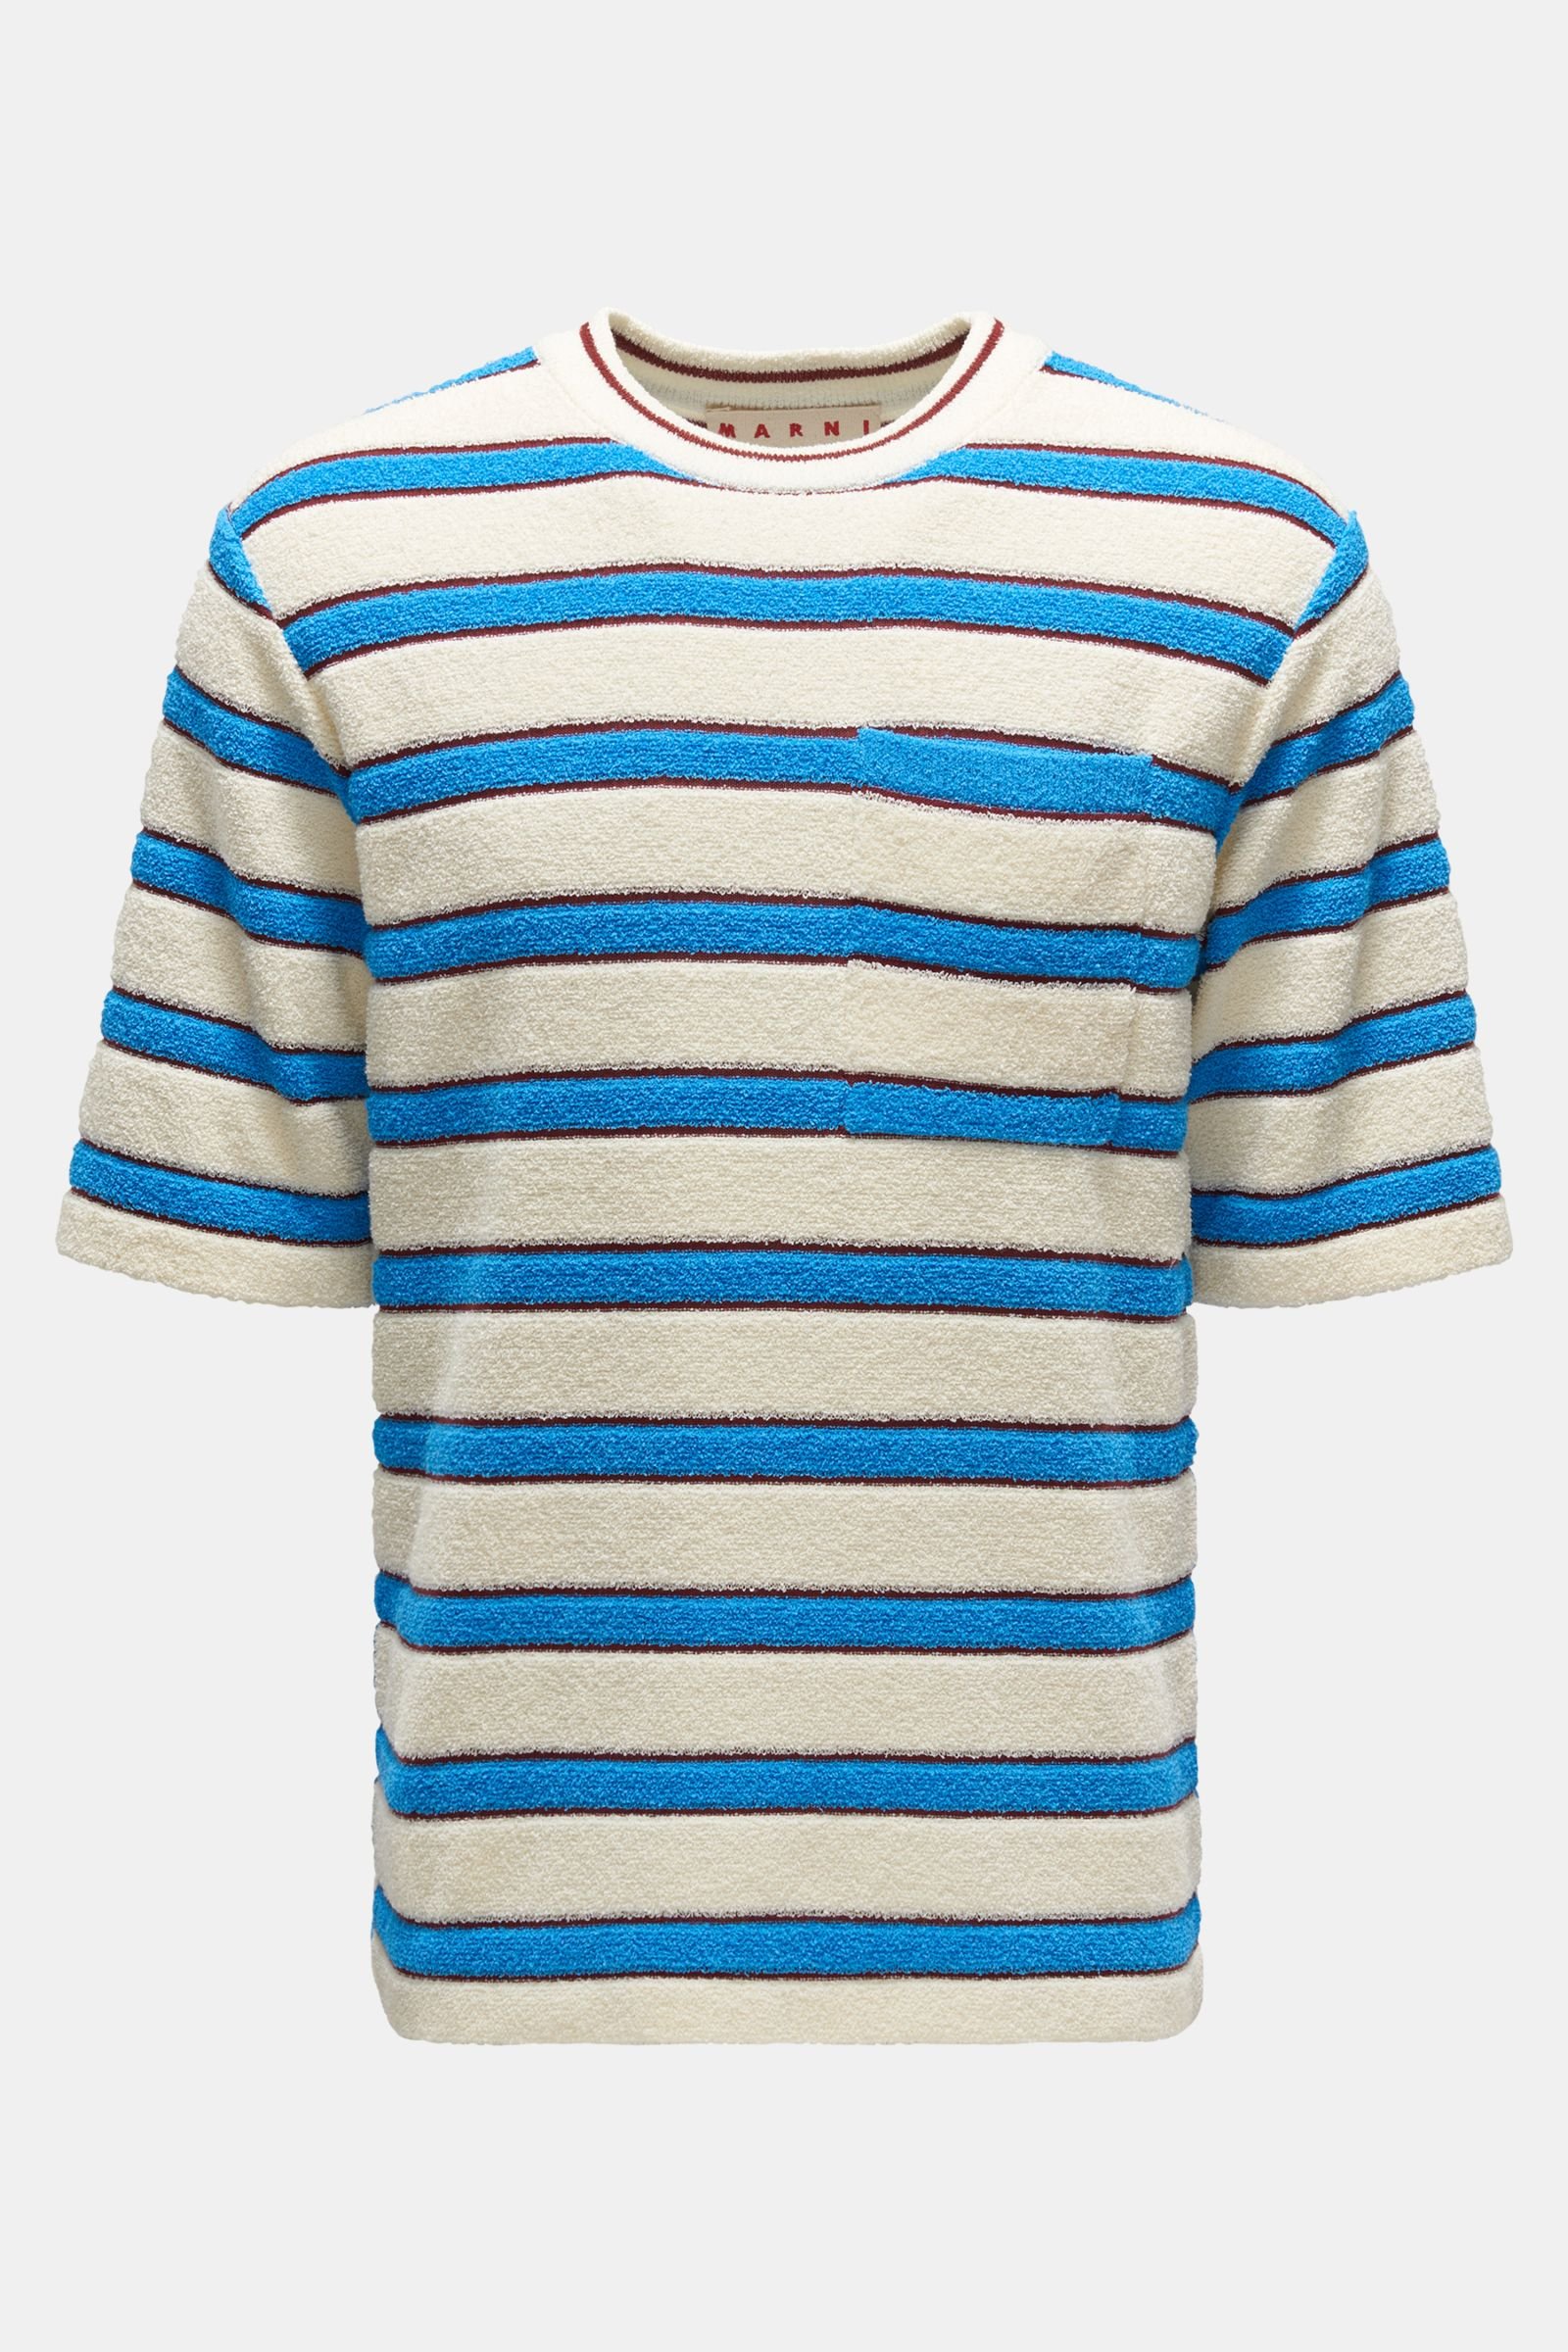 Frottee Rundhals-T-Shirt blau/creme gestreift